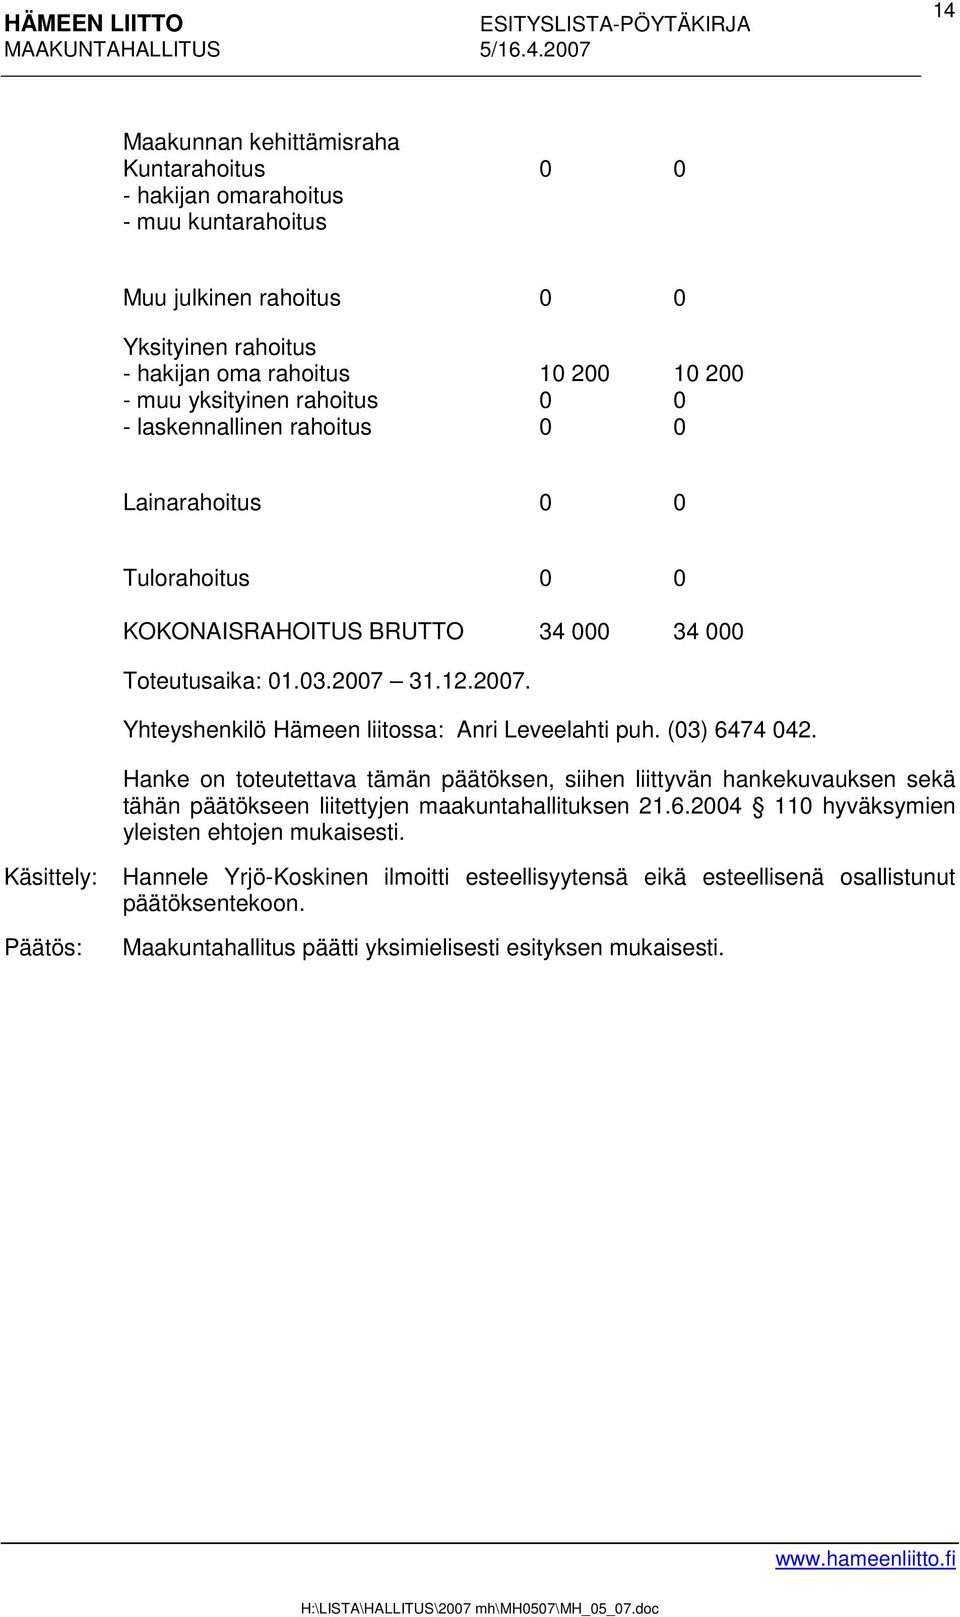 31.12.2007. Yhteyshenkilö Hämeen liitossa: Anri Leveelahti puh. (03) 6474 042.